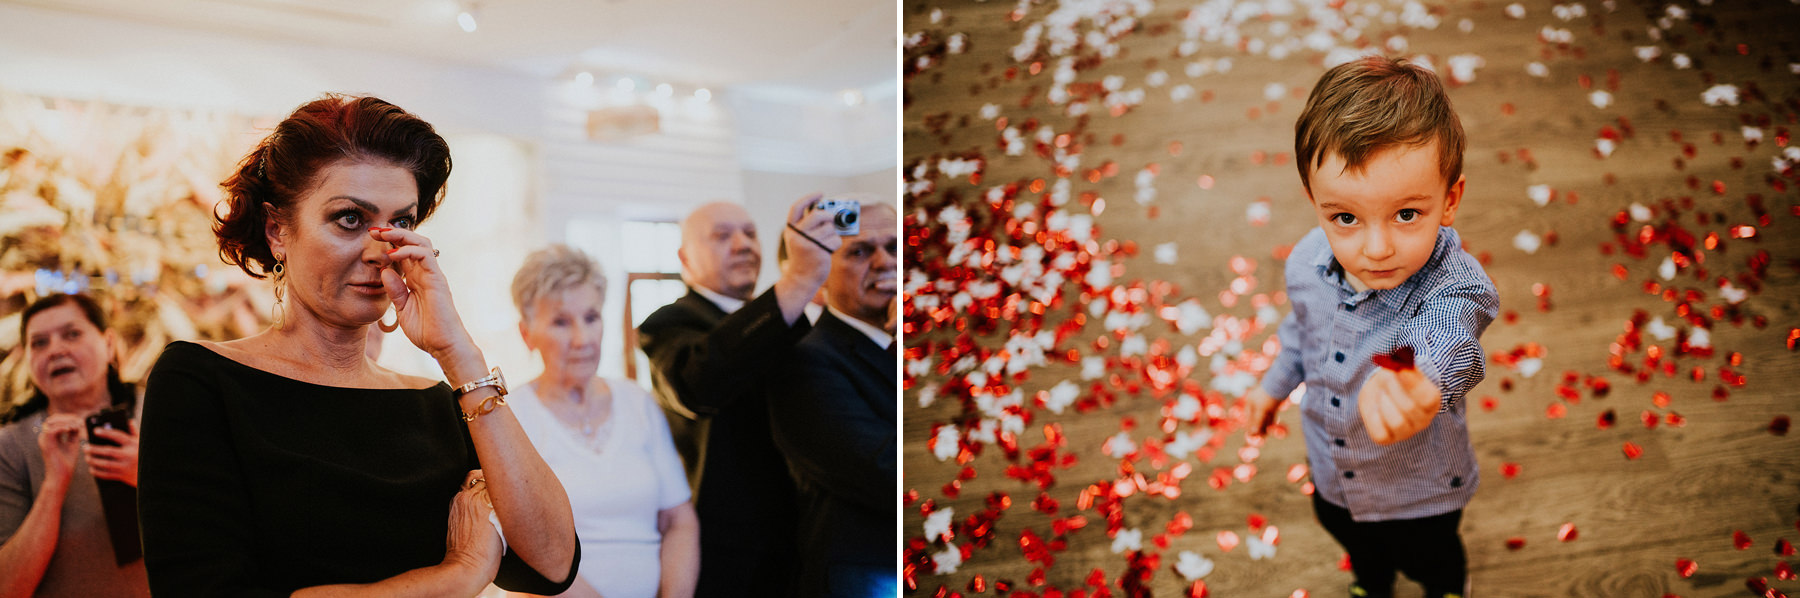 059 Dworek Komorno kedzierzyn kozle wesele sesja kasprowy wierch fotograf karol nycz photography